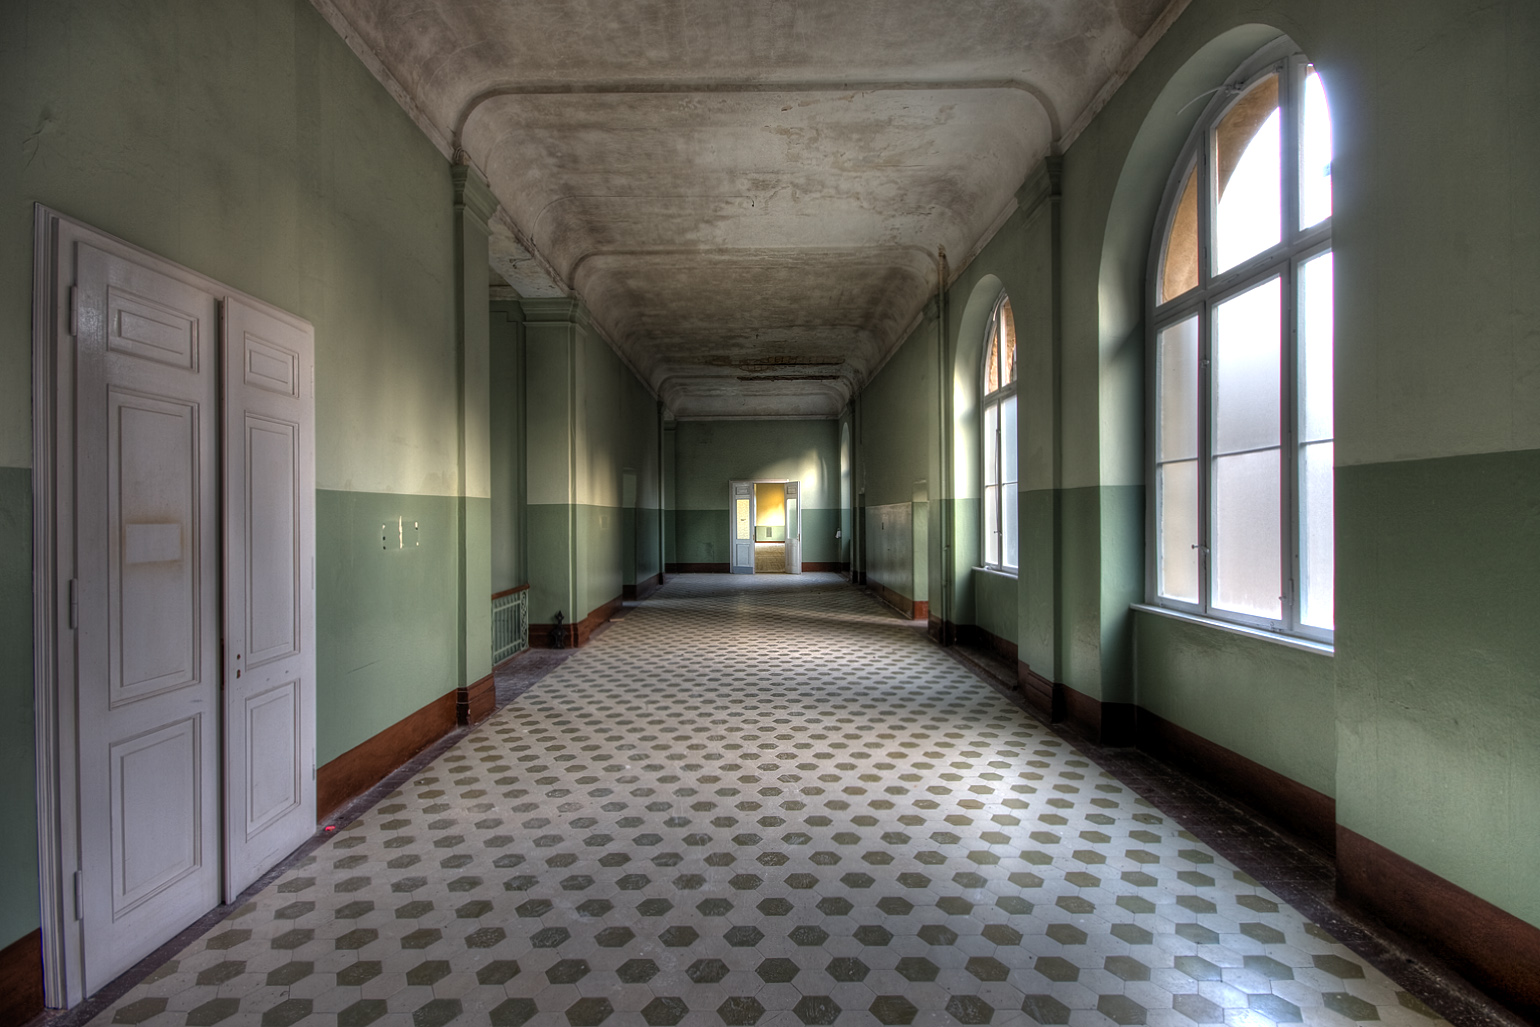 General 1540x1027 hallway building interior